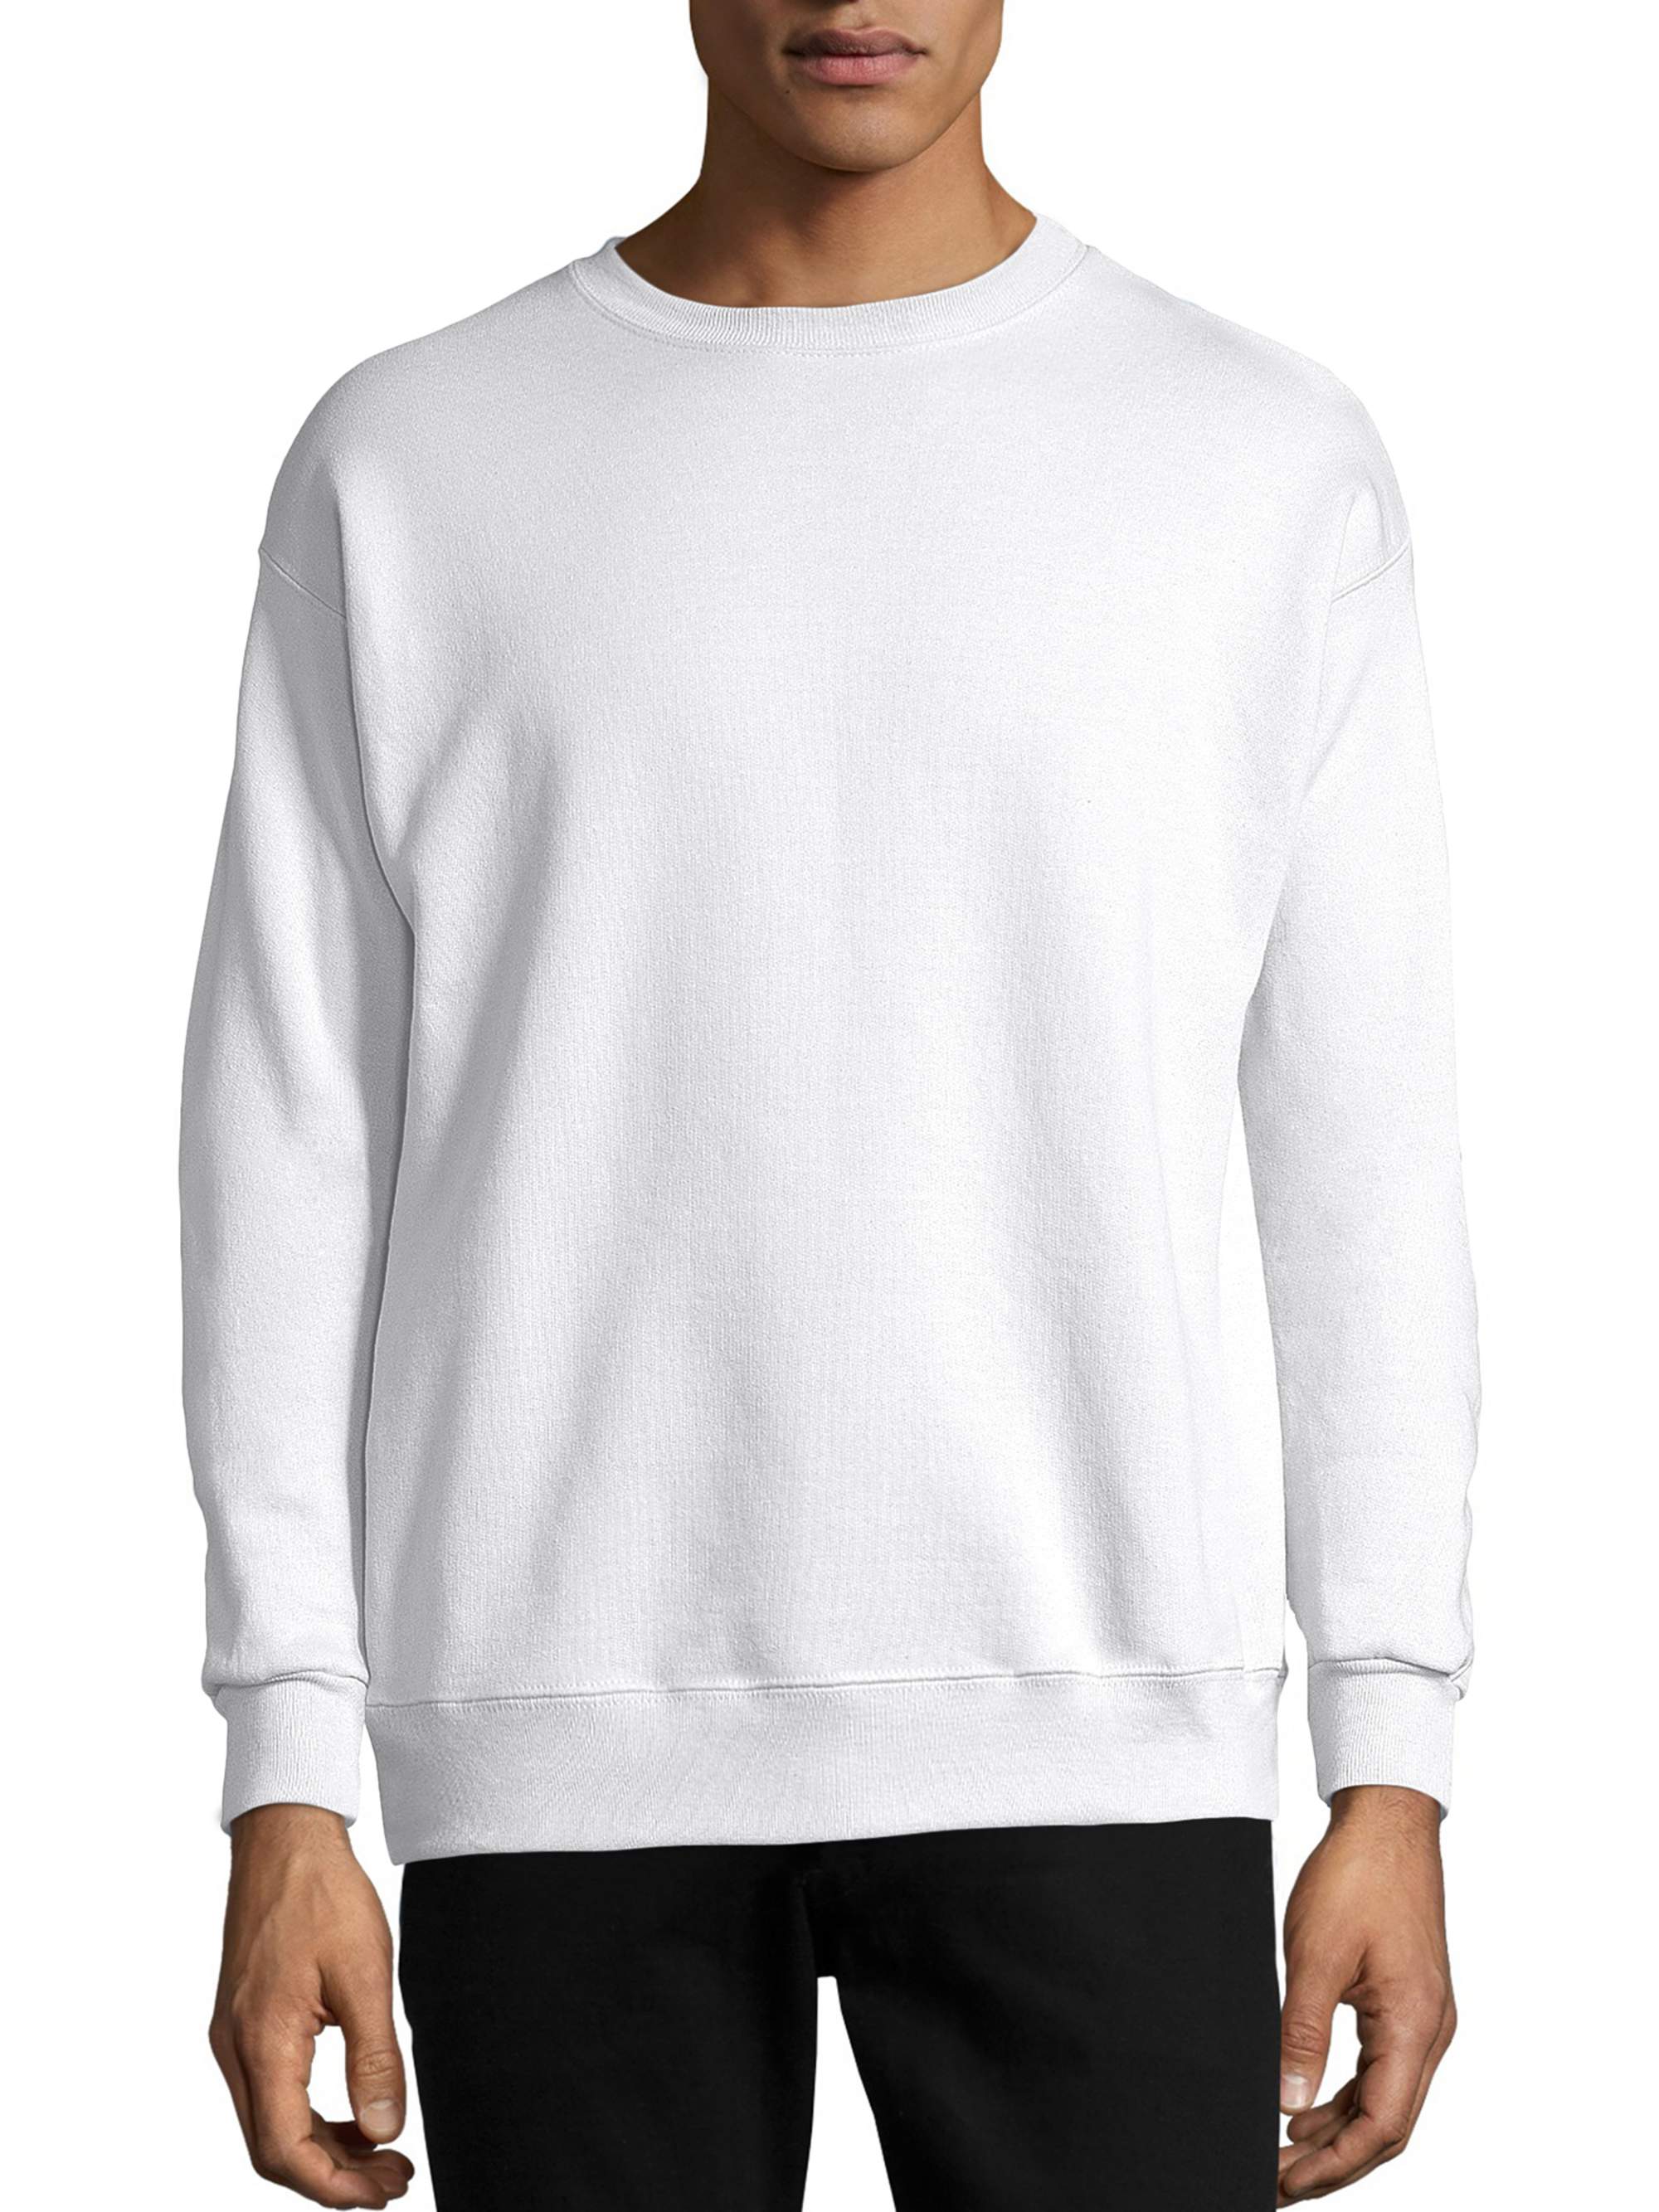 Hanes Men's and Big Men's Ecosmart Fleece Sweatshirt, up to Size 5XL - image 1 of 6